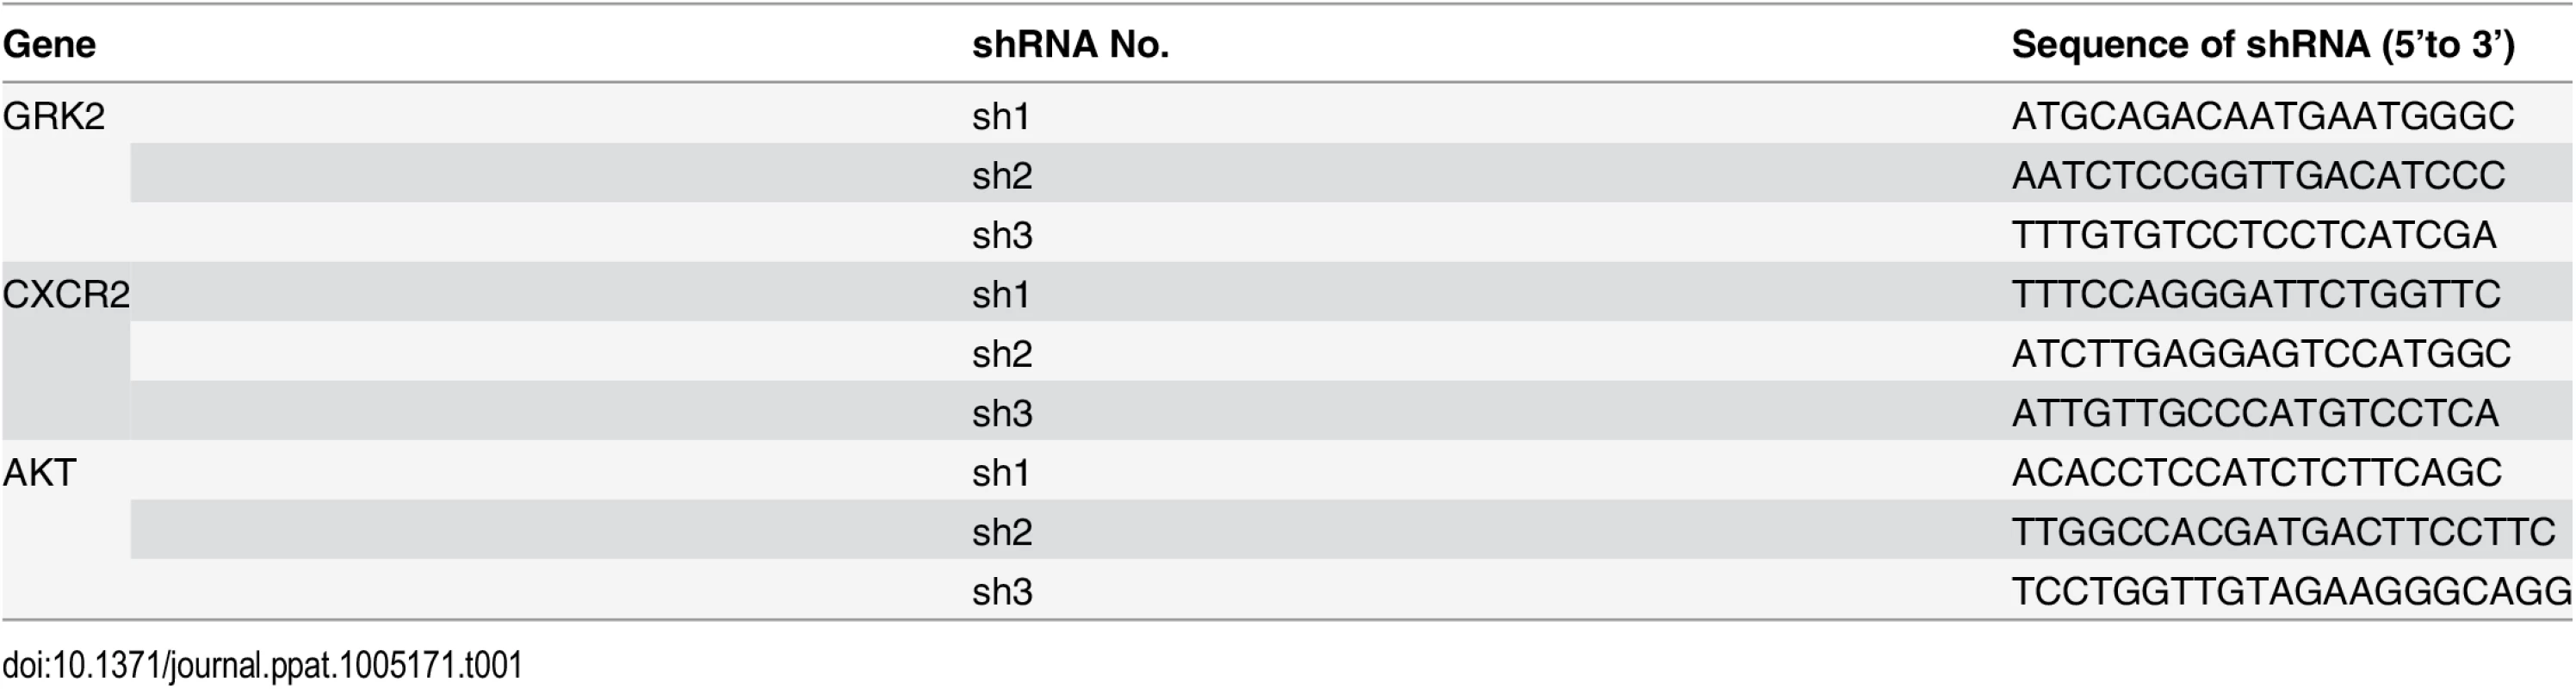 The sequences of the shRNAs.